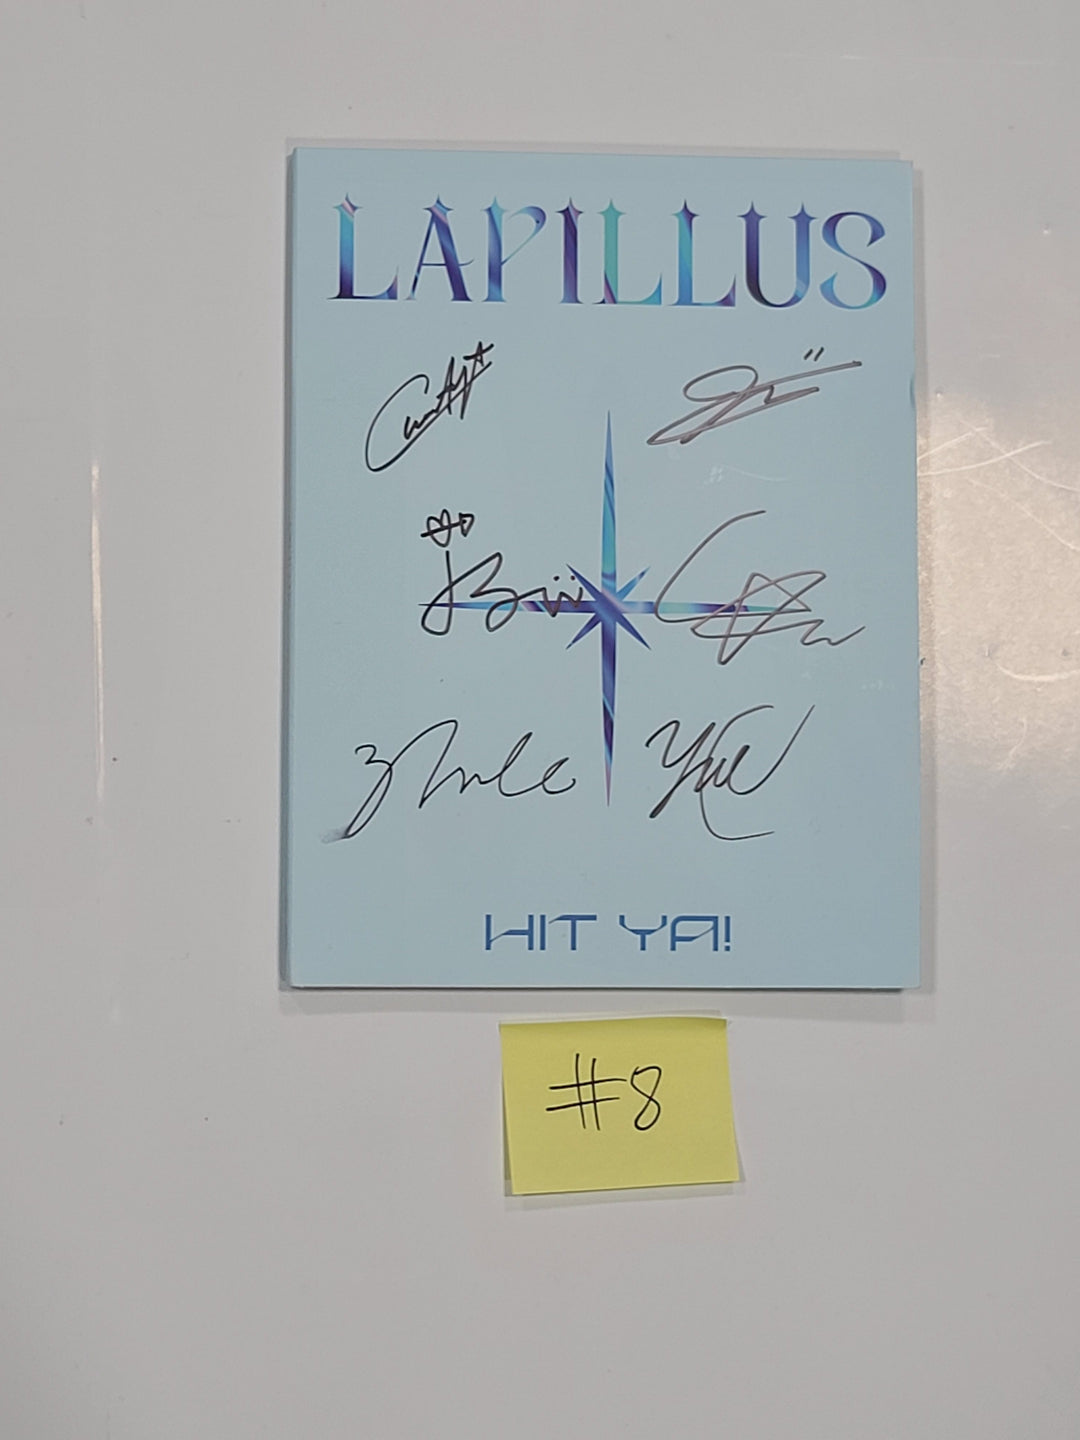 라필루스 "HIT YA!" 1st Digital Single Album - 친필 사인(싸인) 프로모 앨범